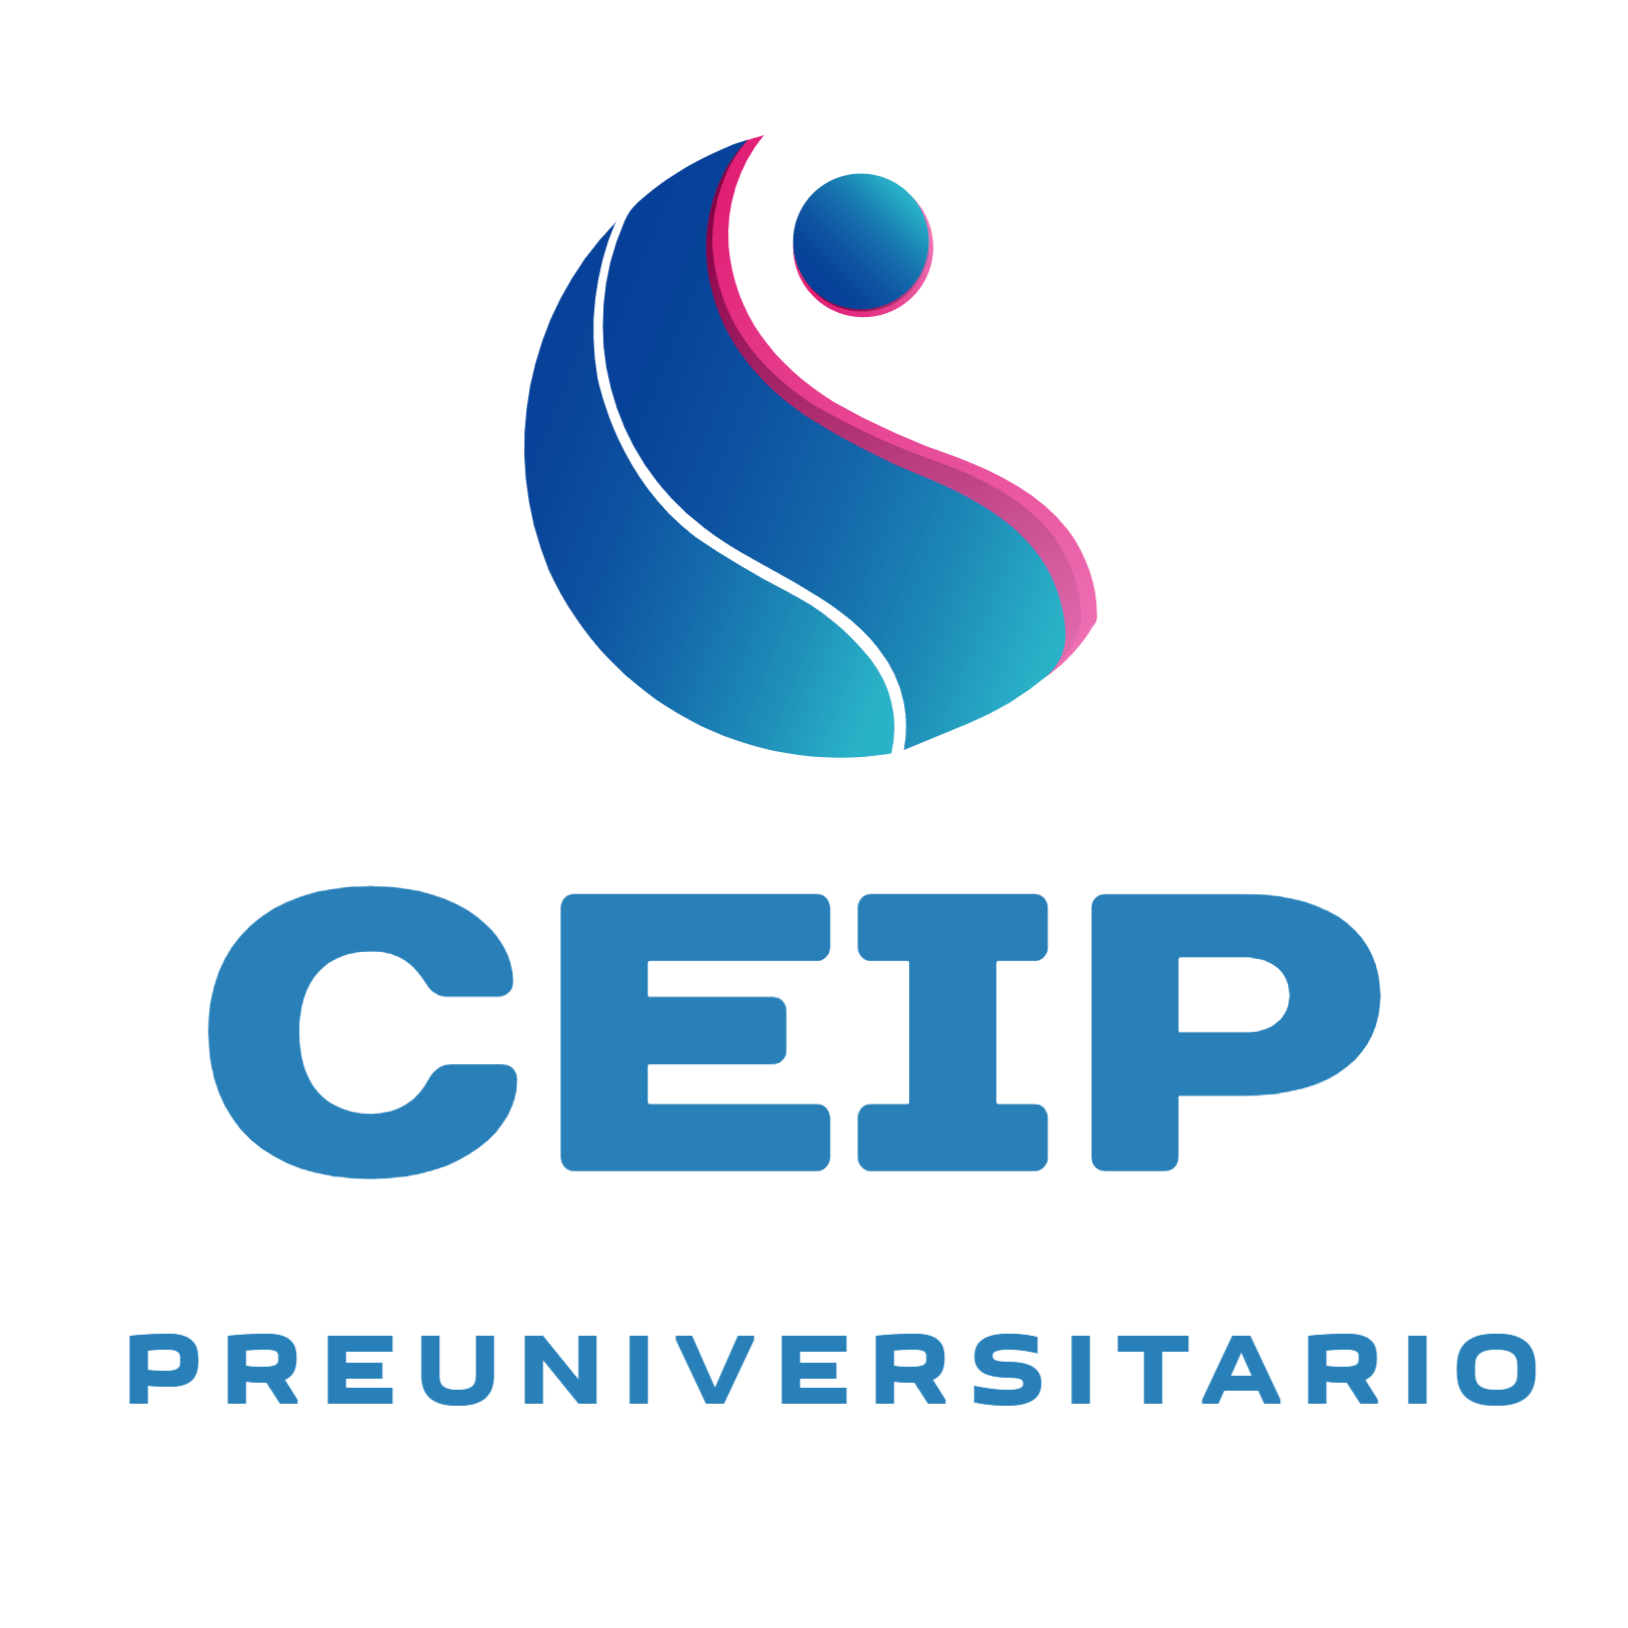 CEIP Centro de Educación Integral y Preuniversitario